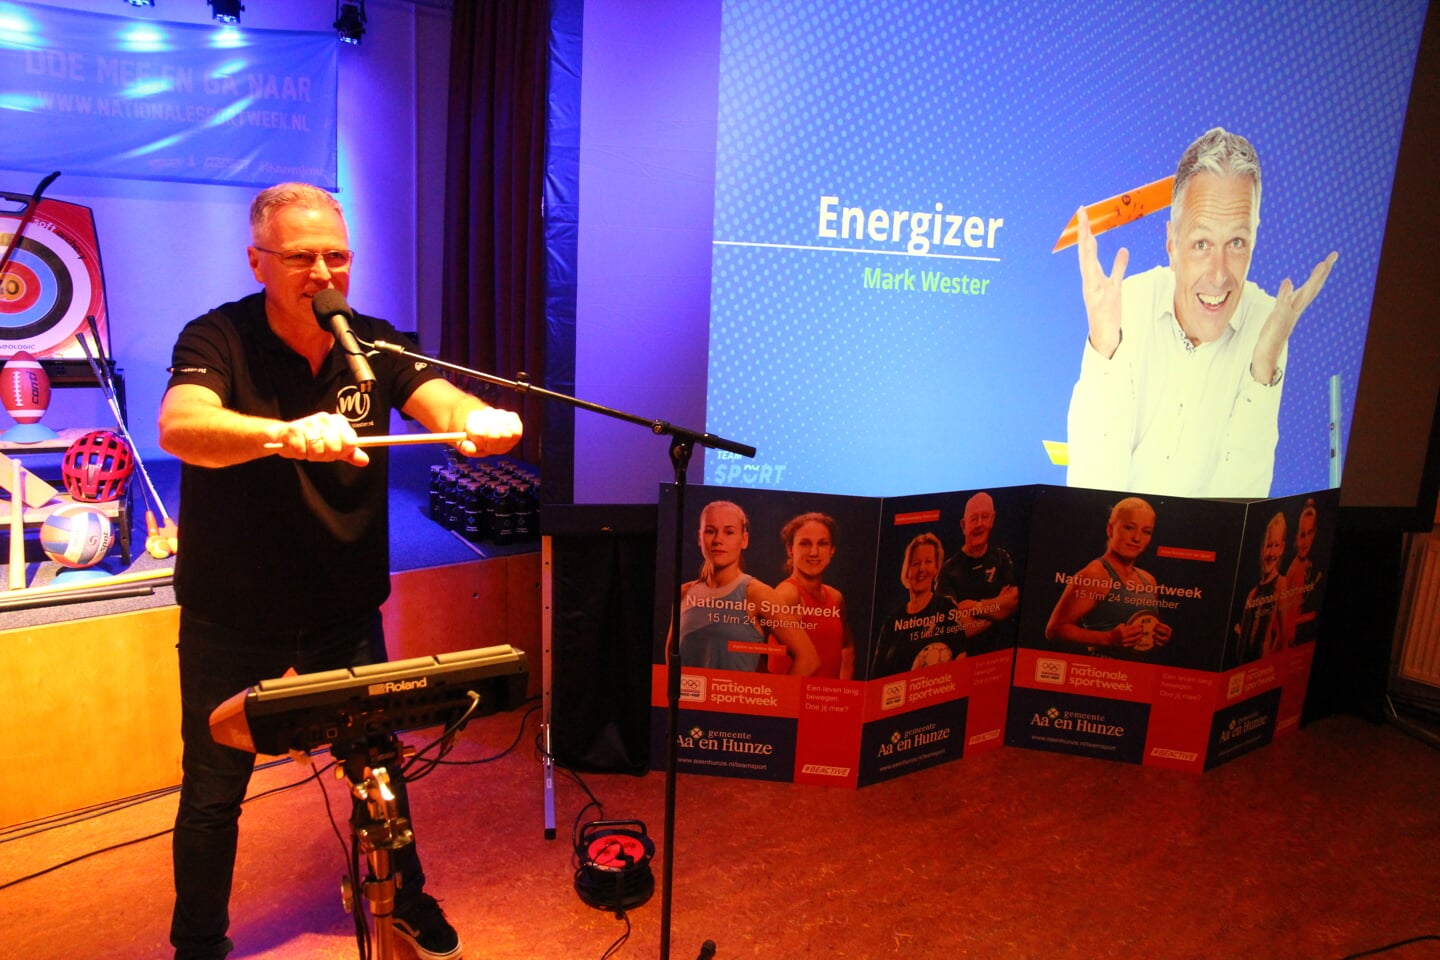 Energizer Mark Wester probeert de zaal in beweging te krijgen. 